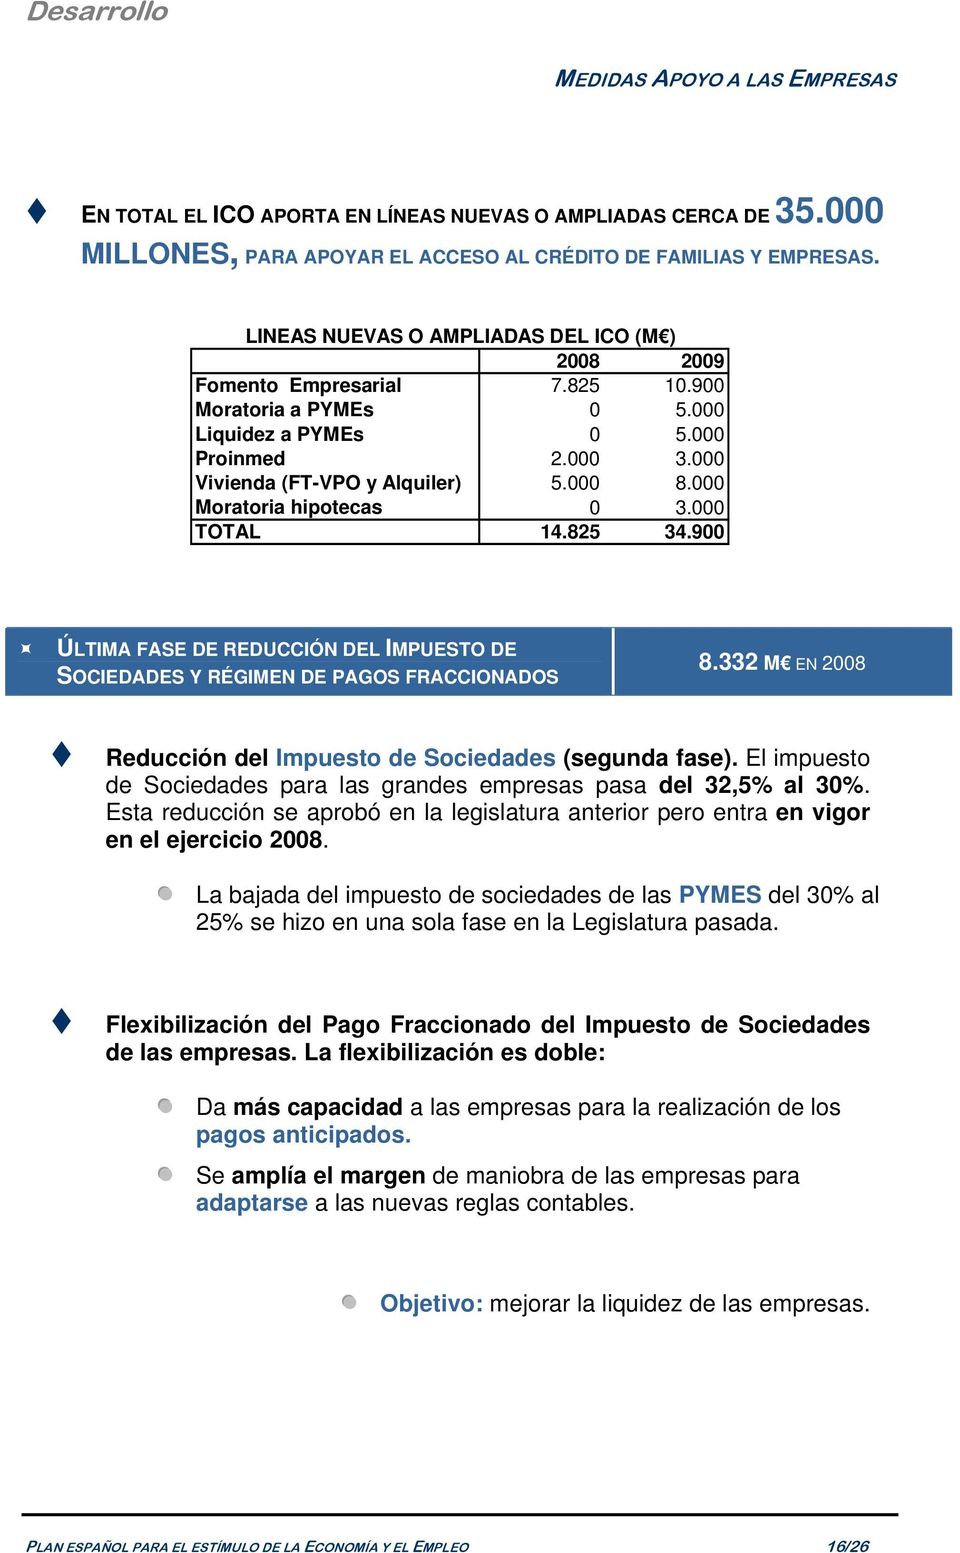 000 Moratoria hipotecas 0 3.000 TOTAL 14.825 34.900 ÚLTIMA FASE DE REDUCCIÓN DEL IMPUESTO DE SOCIEDADES Y RÉGIMEN DE PAGOS FRACCIONADOS 8.